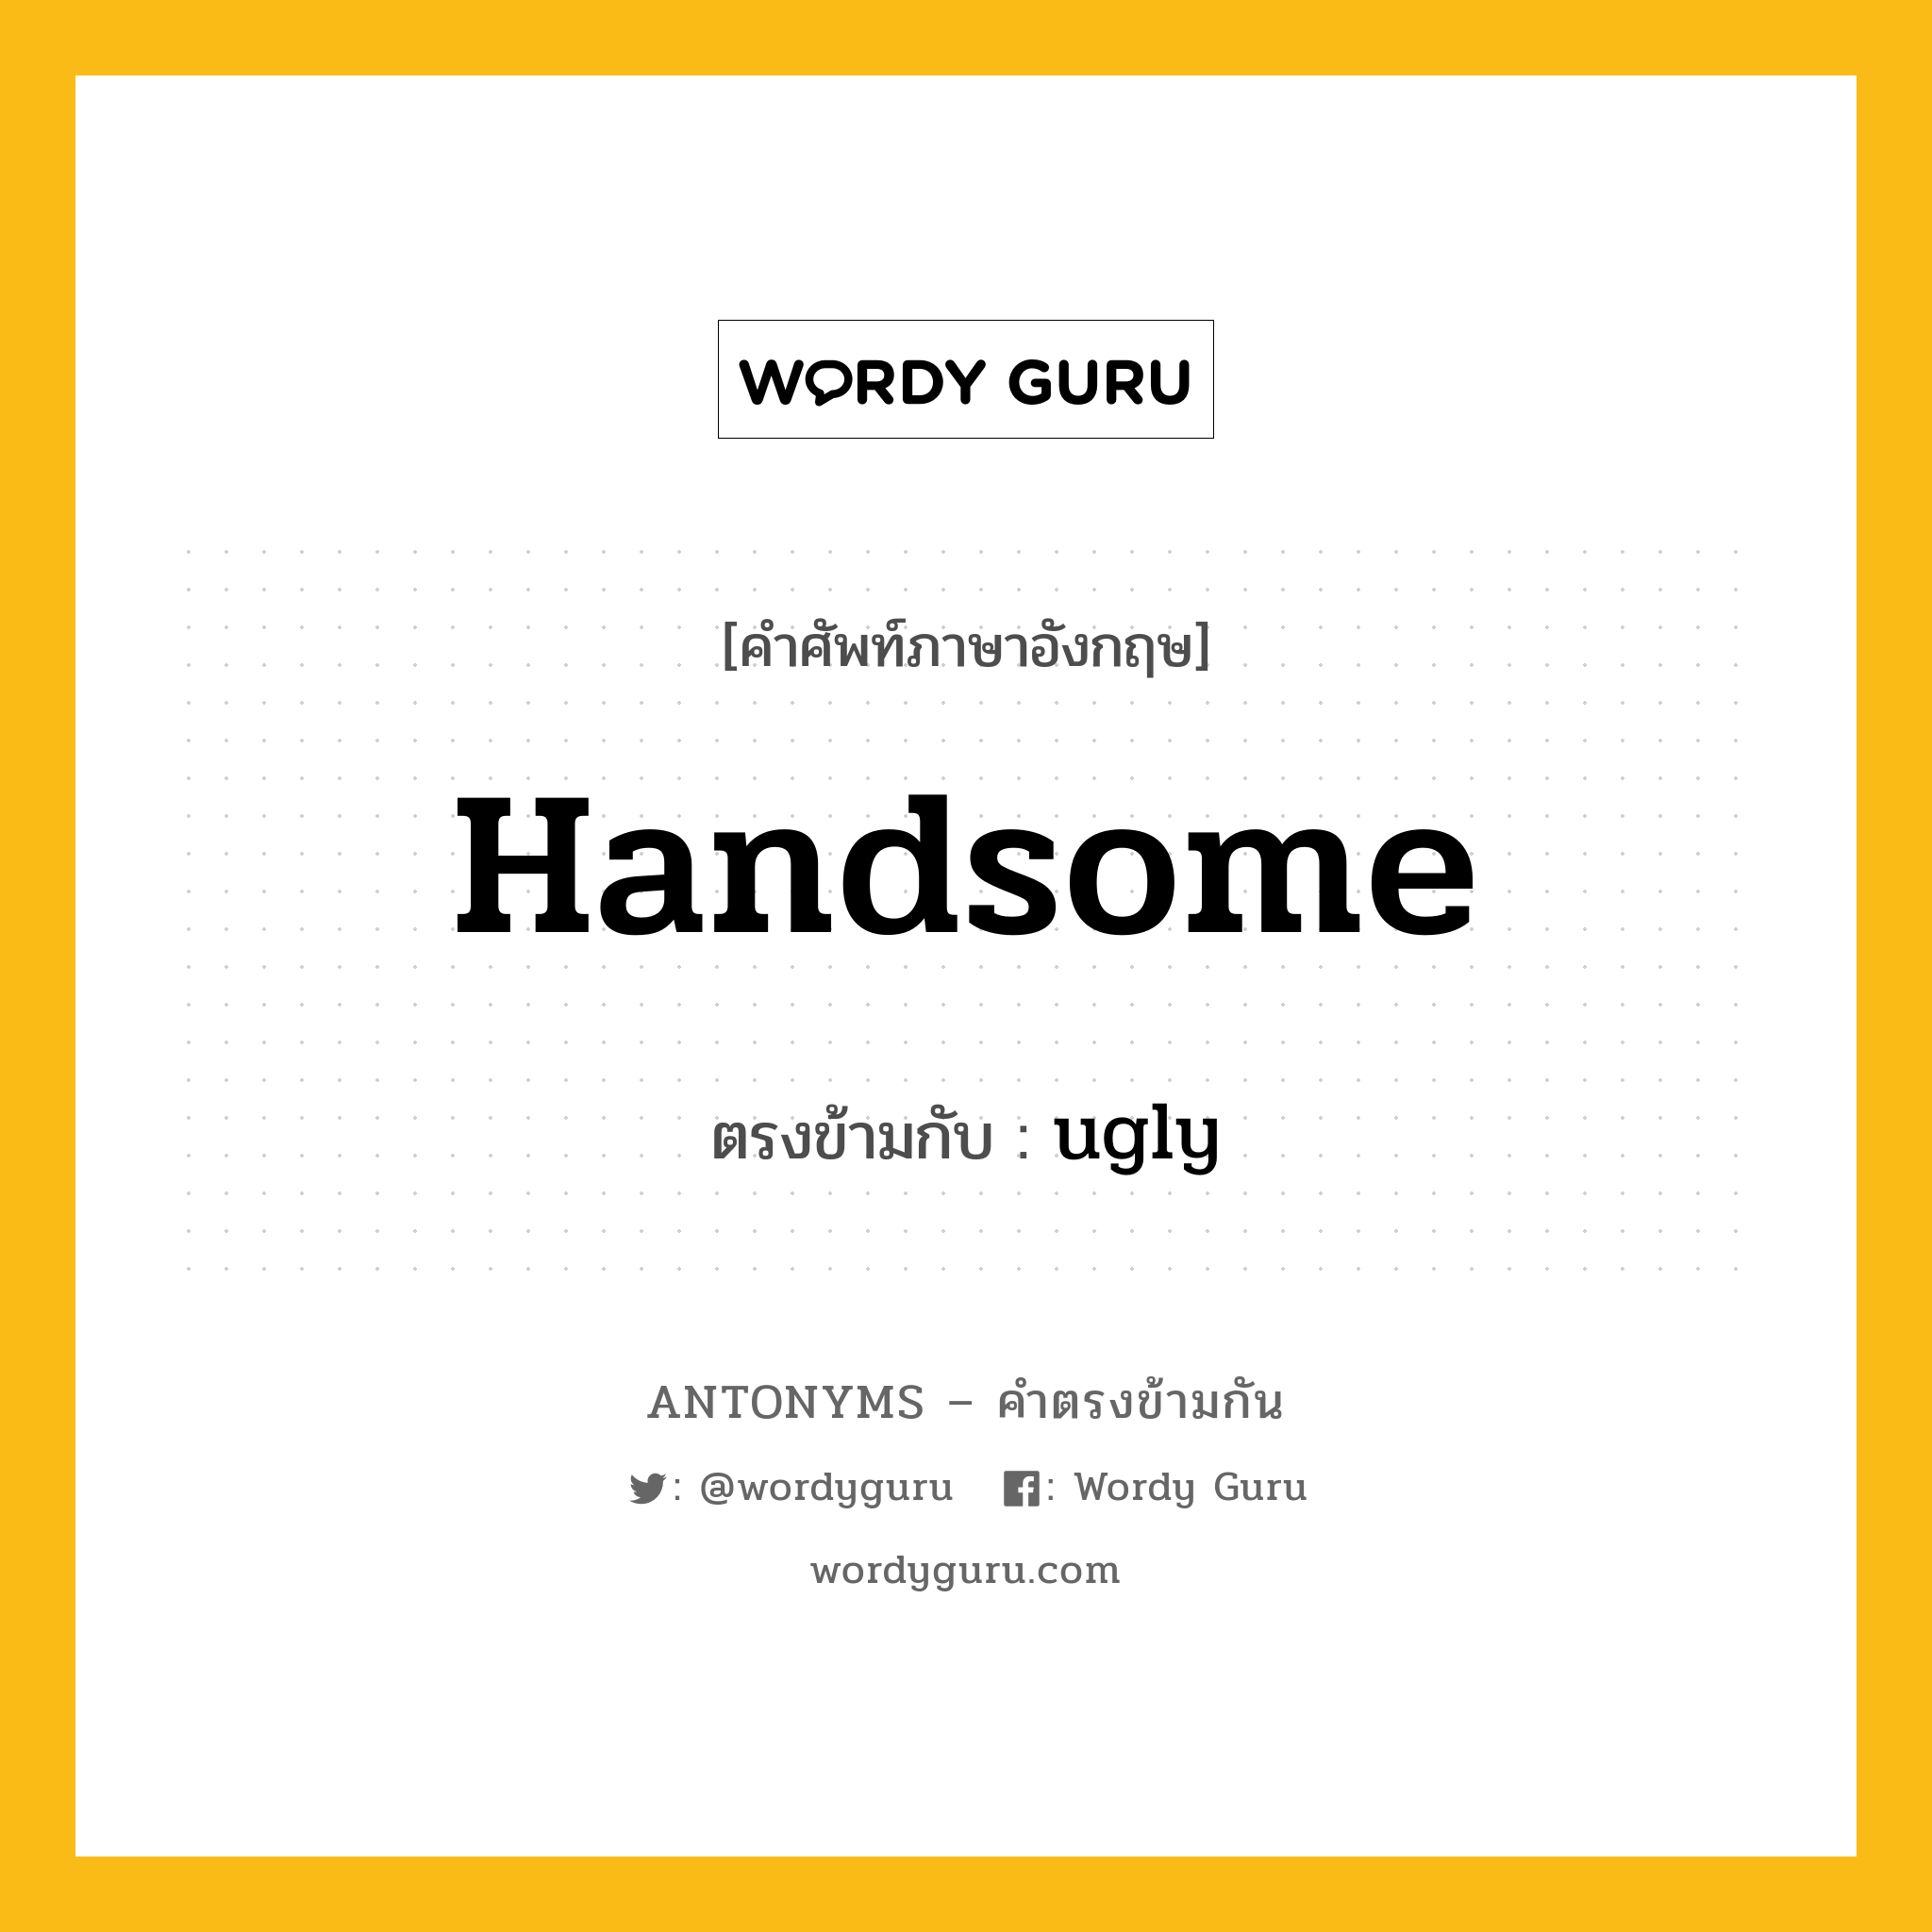 handsome เป็นคำตรงข้ามกับคำไหนบ้าง?, คำศัพท์ภาษาอังกฤษ handsome ตรงข้ามกับ ugly หมวด ugly